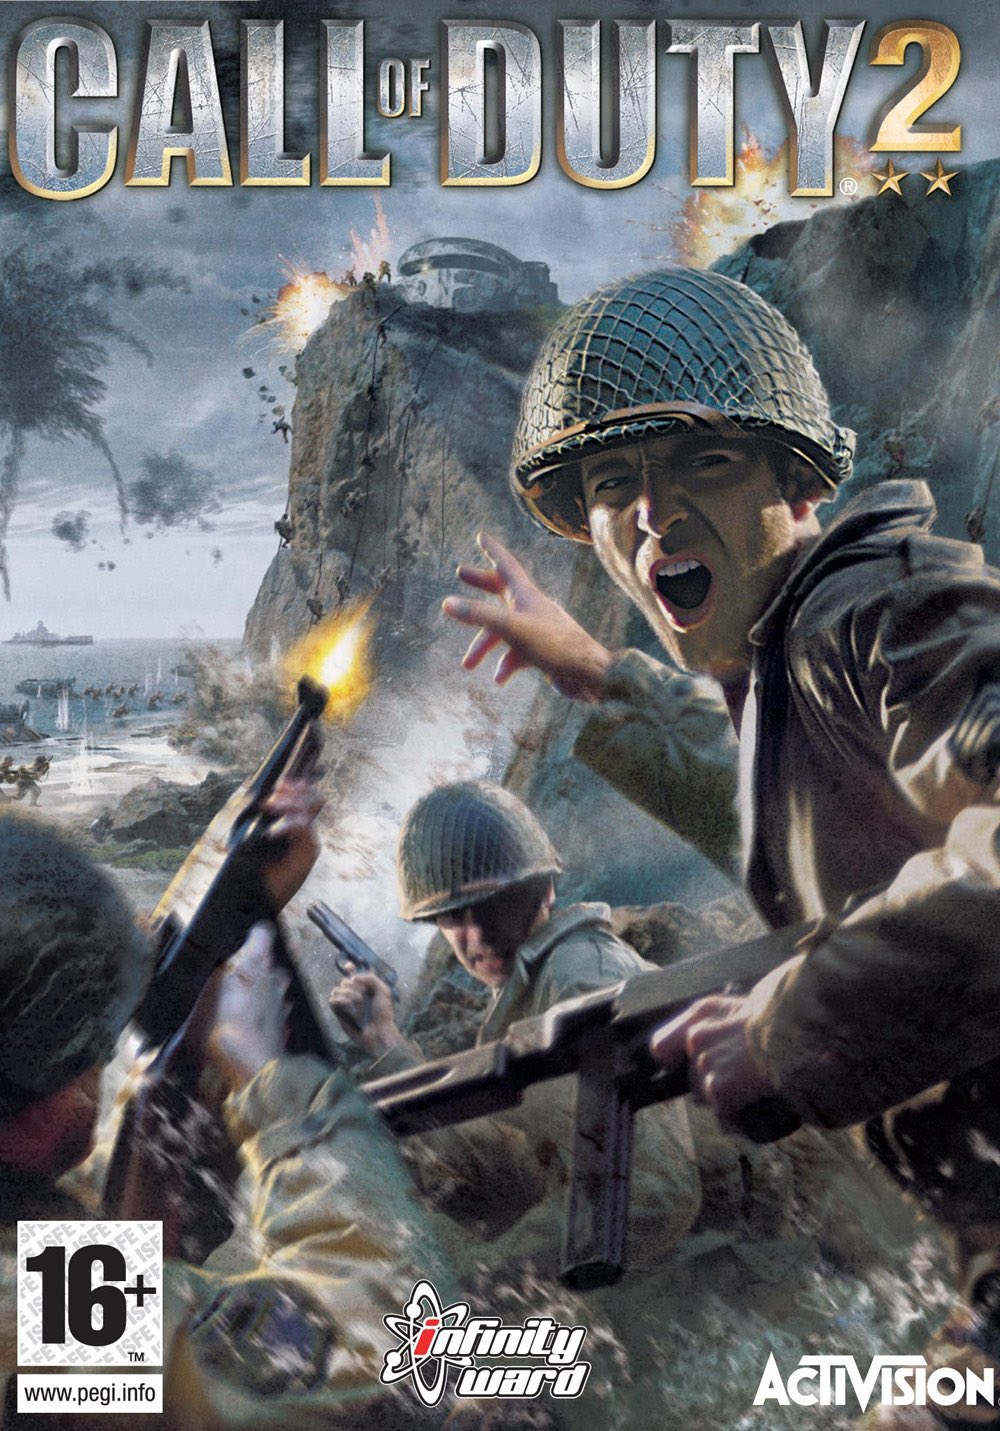 vermogen binnenkomst escort Call of Duty 2 | Call of Duty Wiki | Fandom